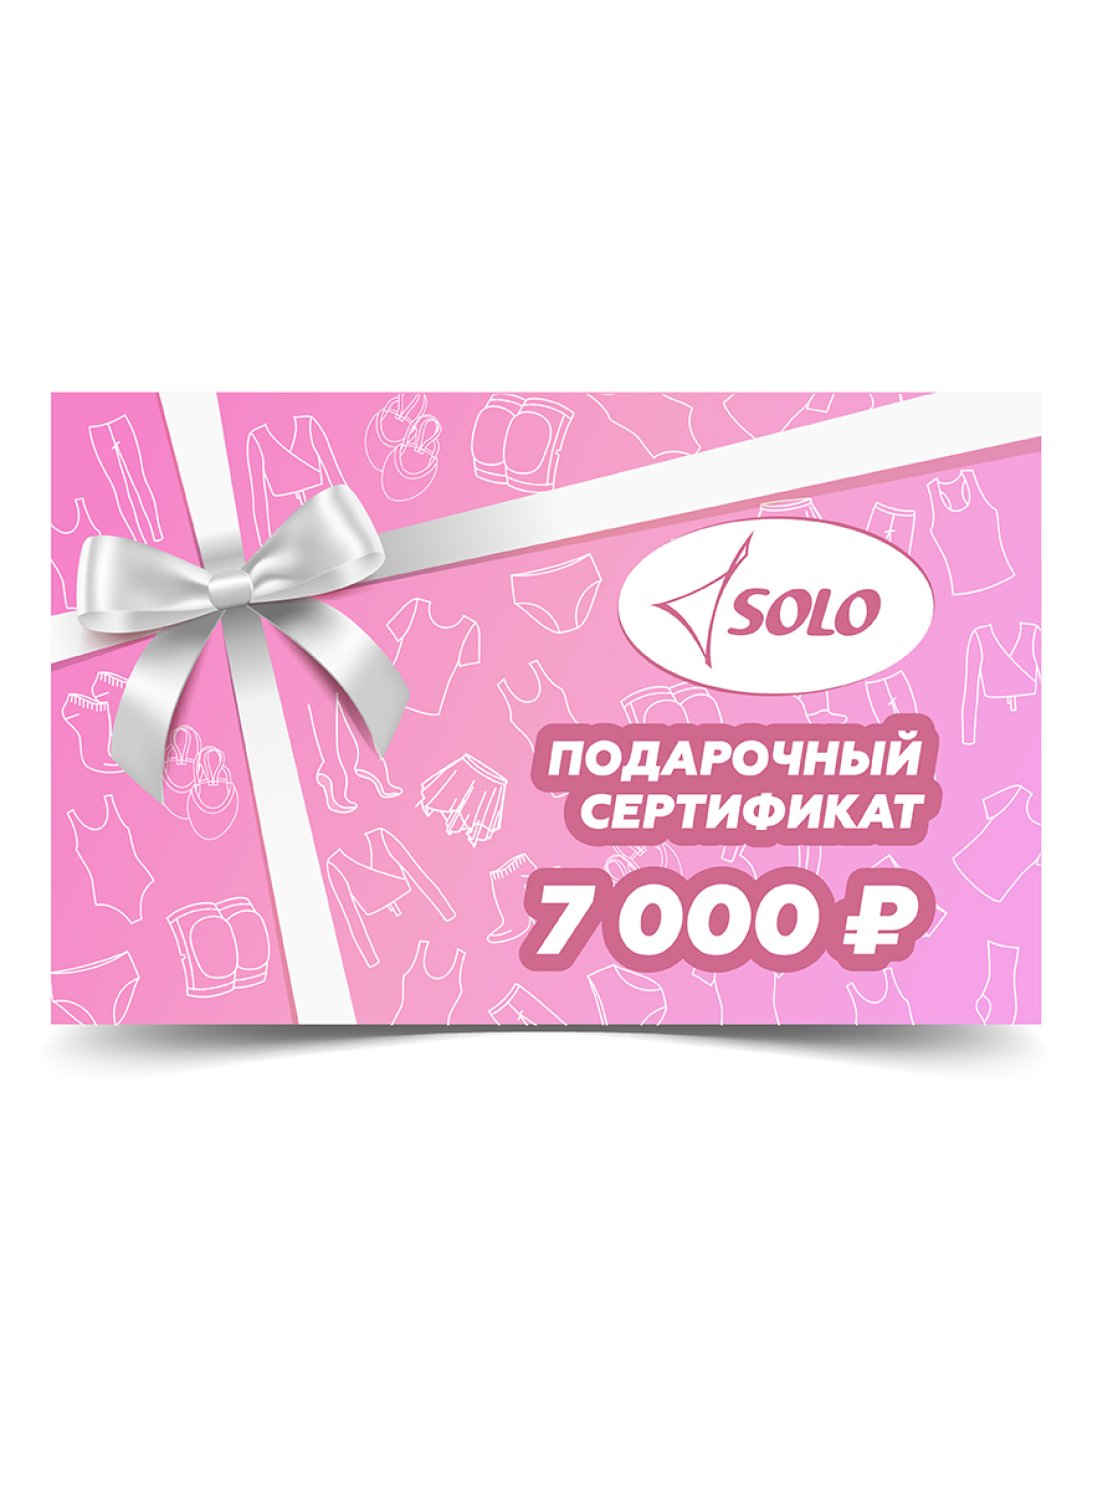 Электронный подарочный сертификат номиналом 7 000 рублей